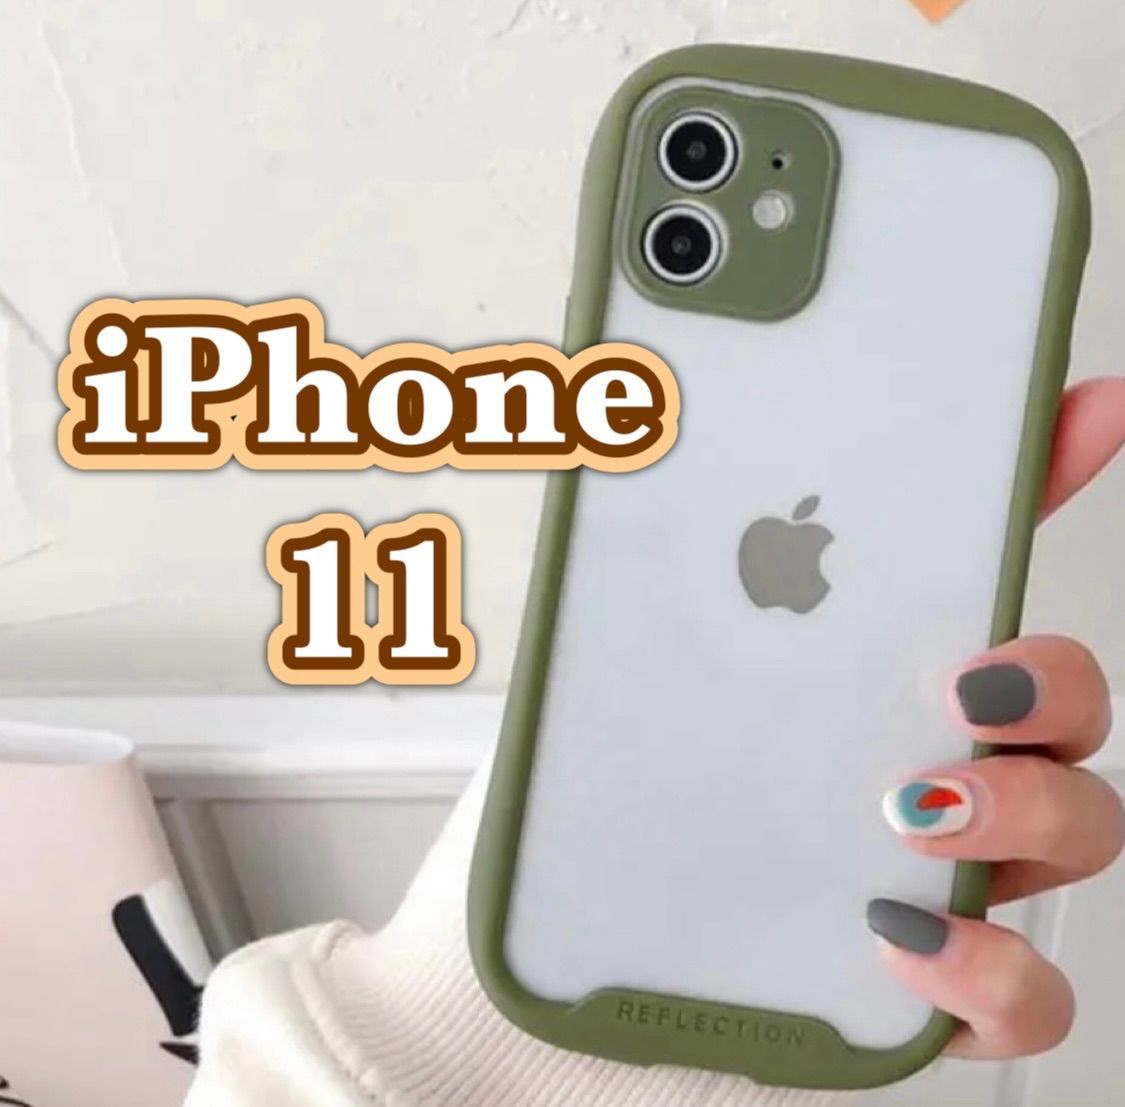 iPhoneケース iPhone11 iphone11 iphoneケース カバー 韓国 スマホケース アイフォンケース クリアケース シンプル  大人気 おしゃれ 緑 グリーン カーキ 11 メルカリShops